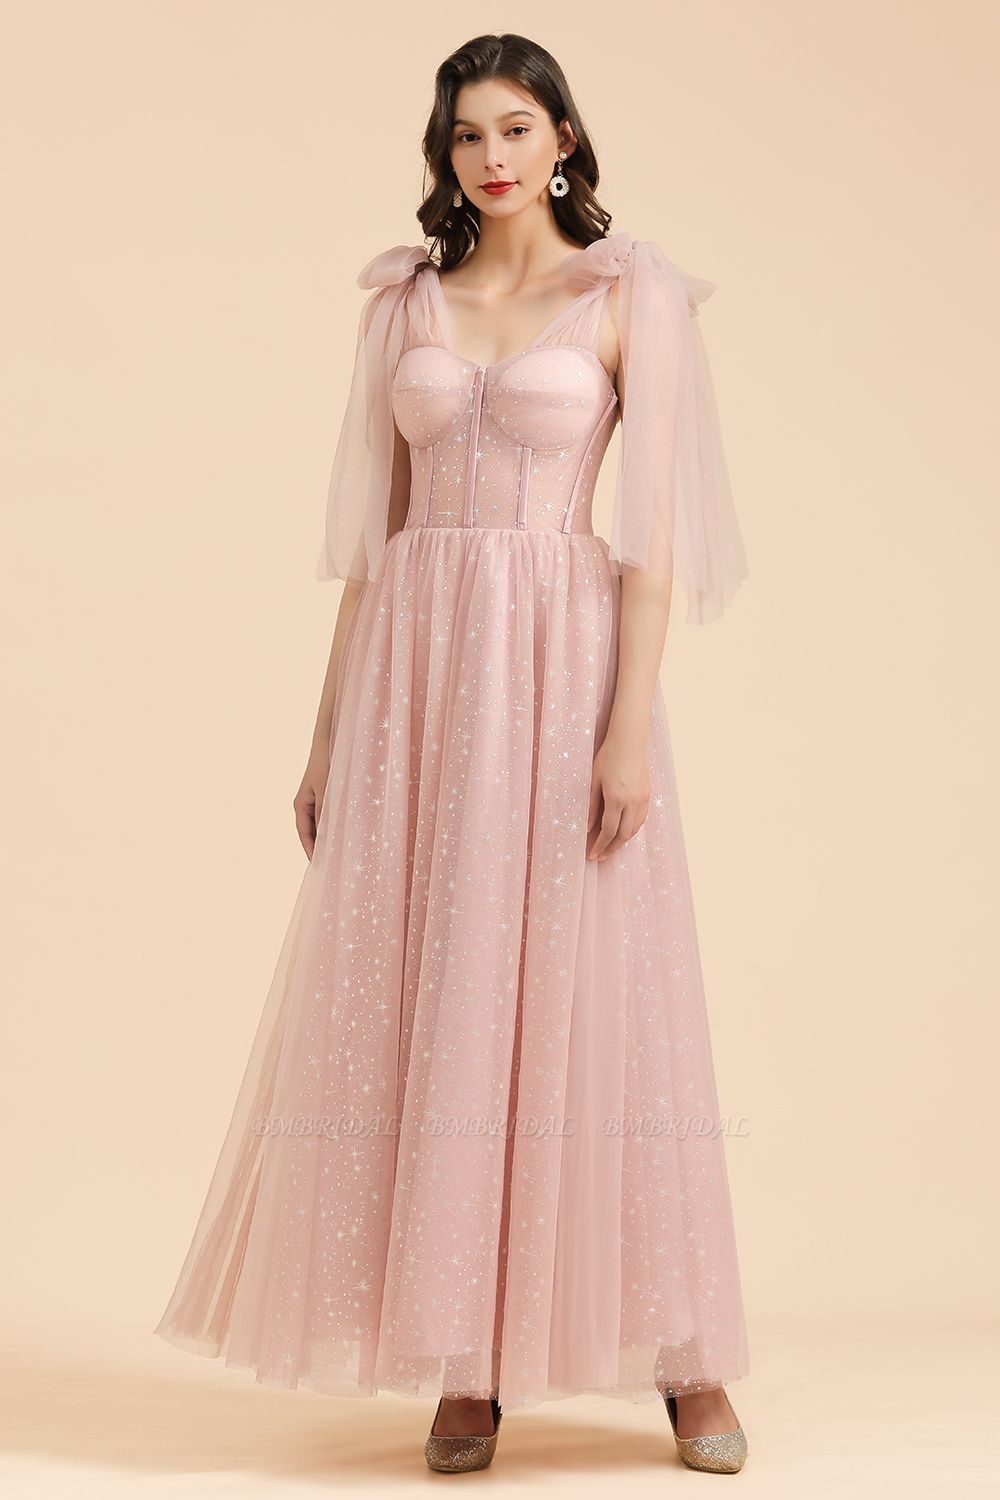 BMbridal V-neck Tulle Long Evening Pink Prom Dress Online